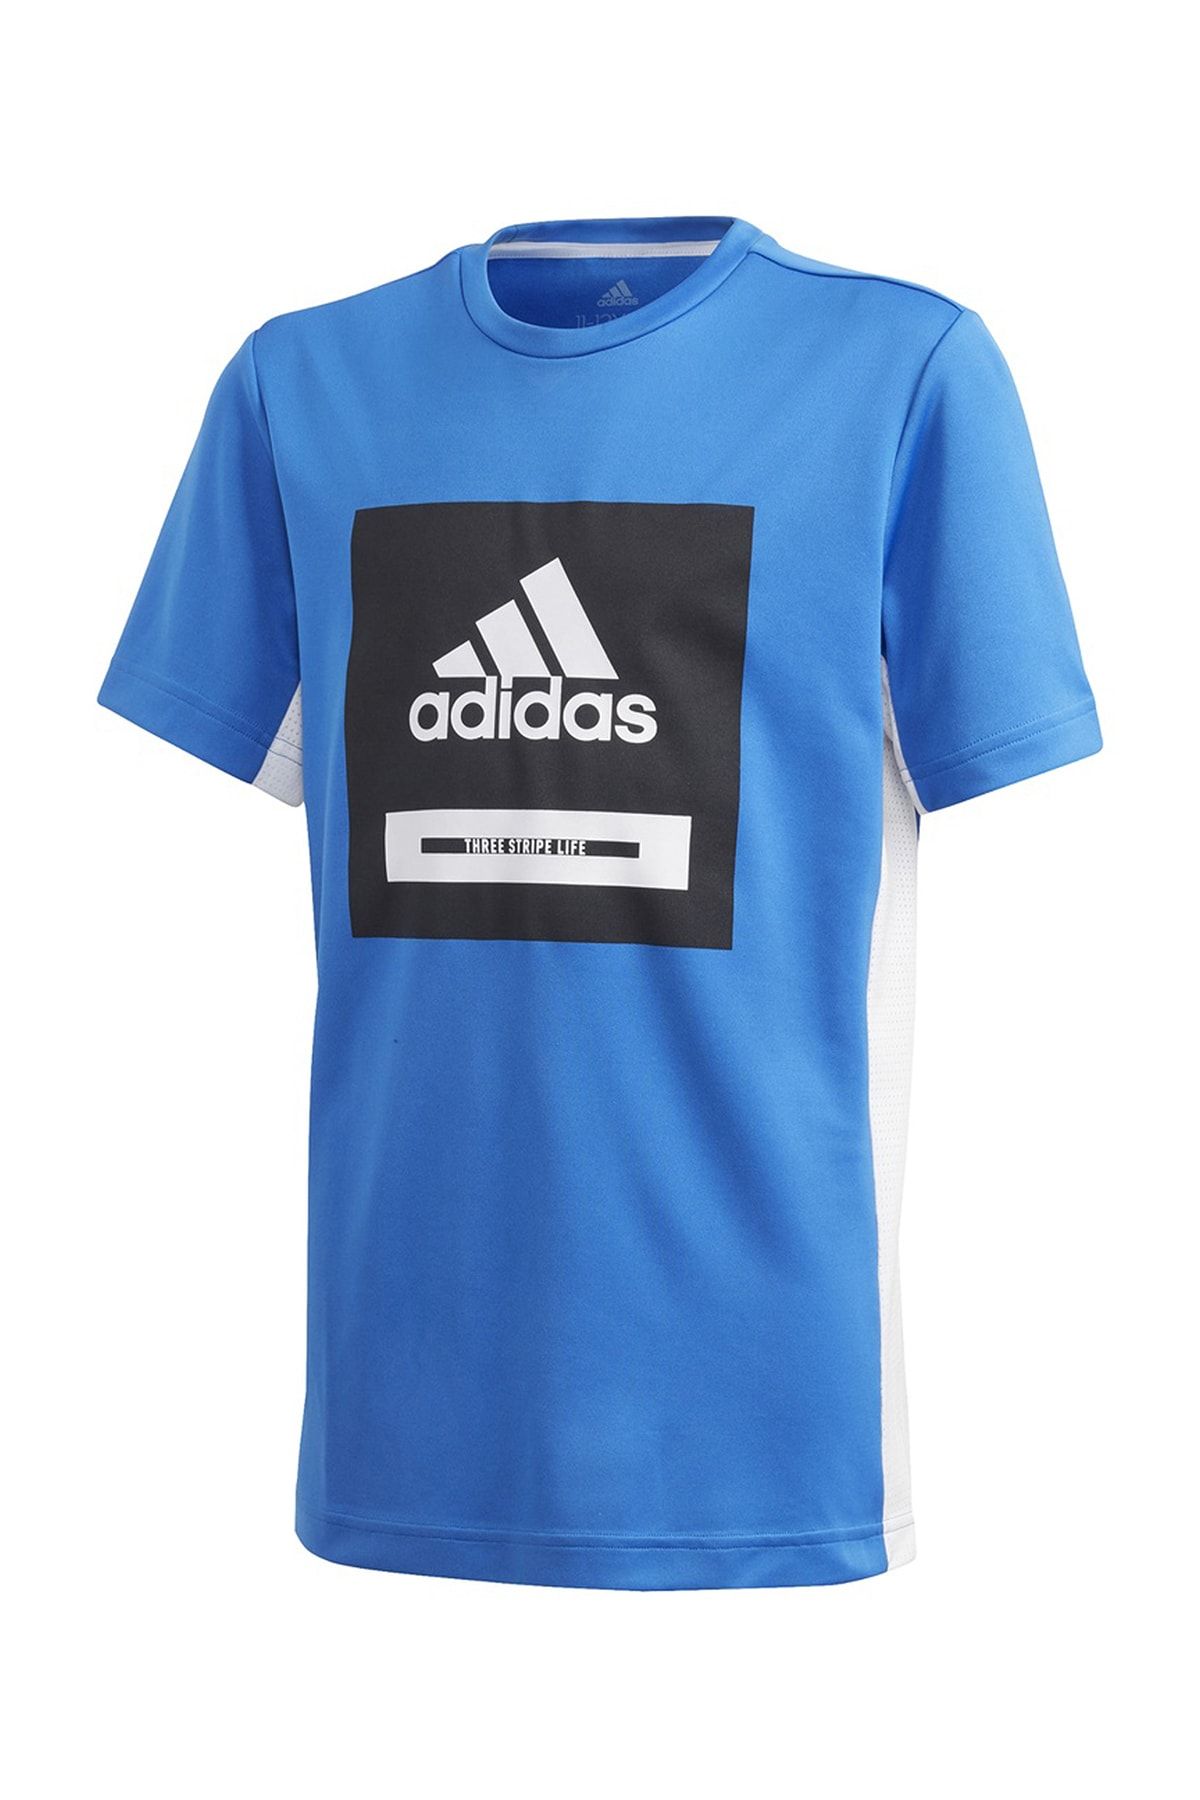 adidas FM1699-C adidas Jb Tr Bold Tee Çocuk T-Shirt Mavi